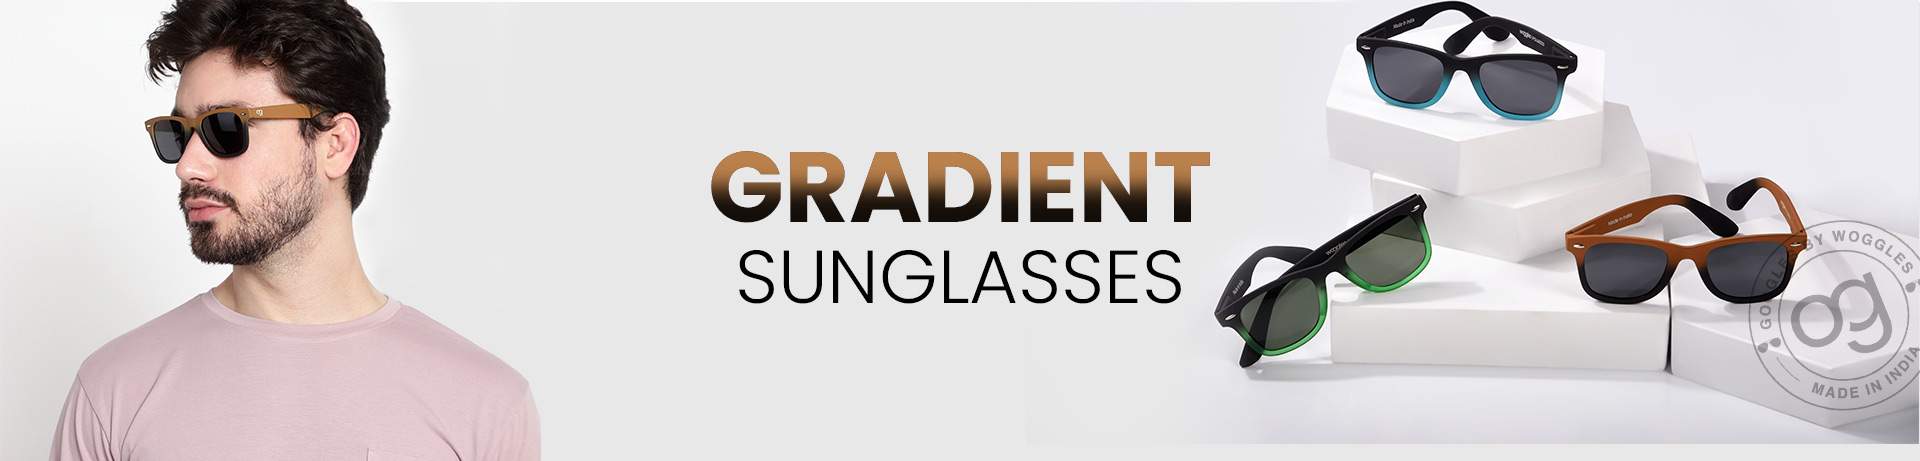 gradient sunglasses for men